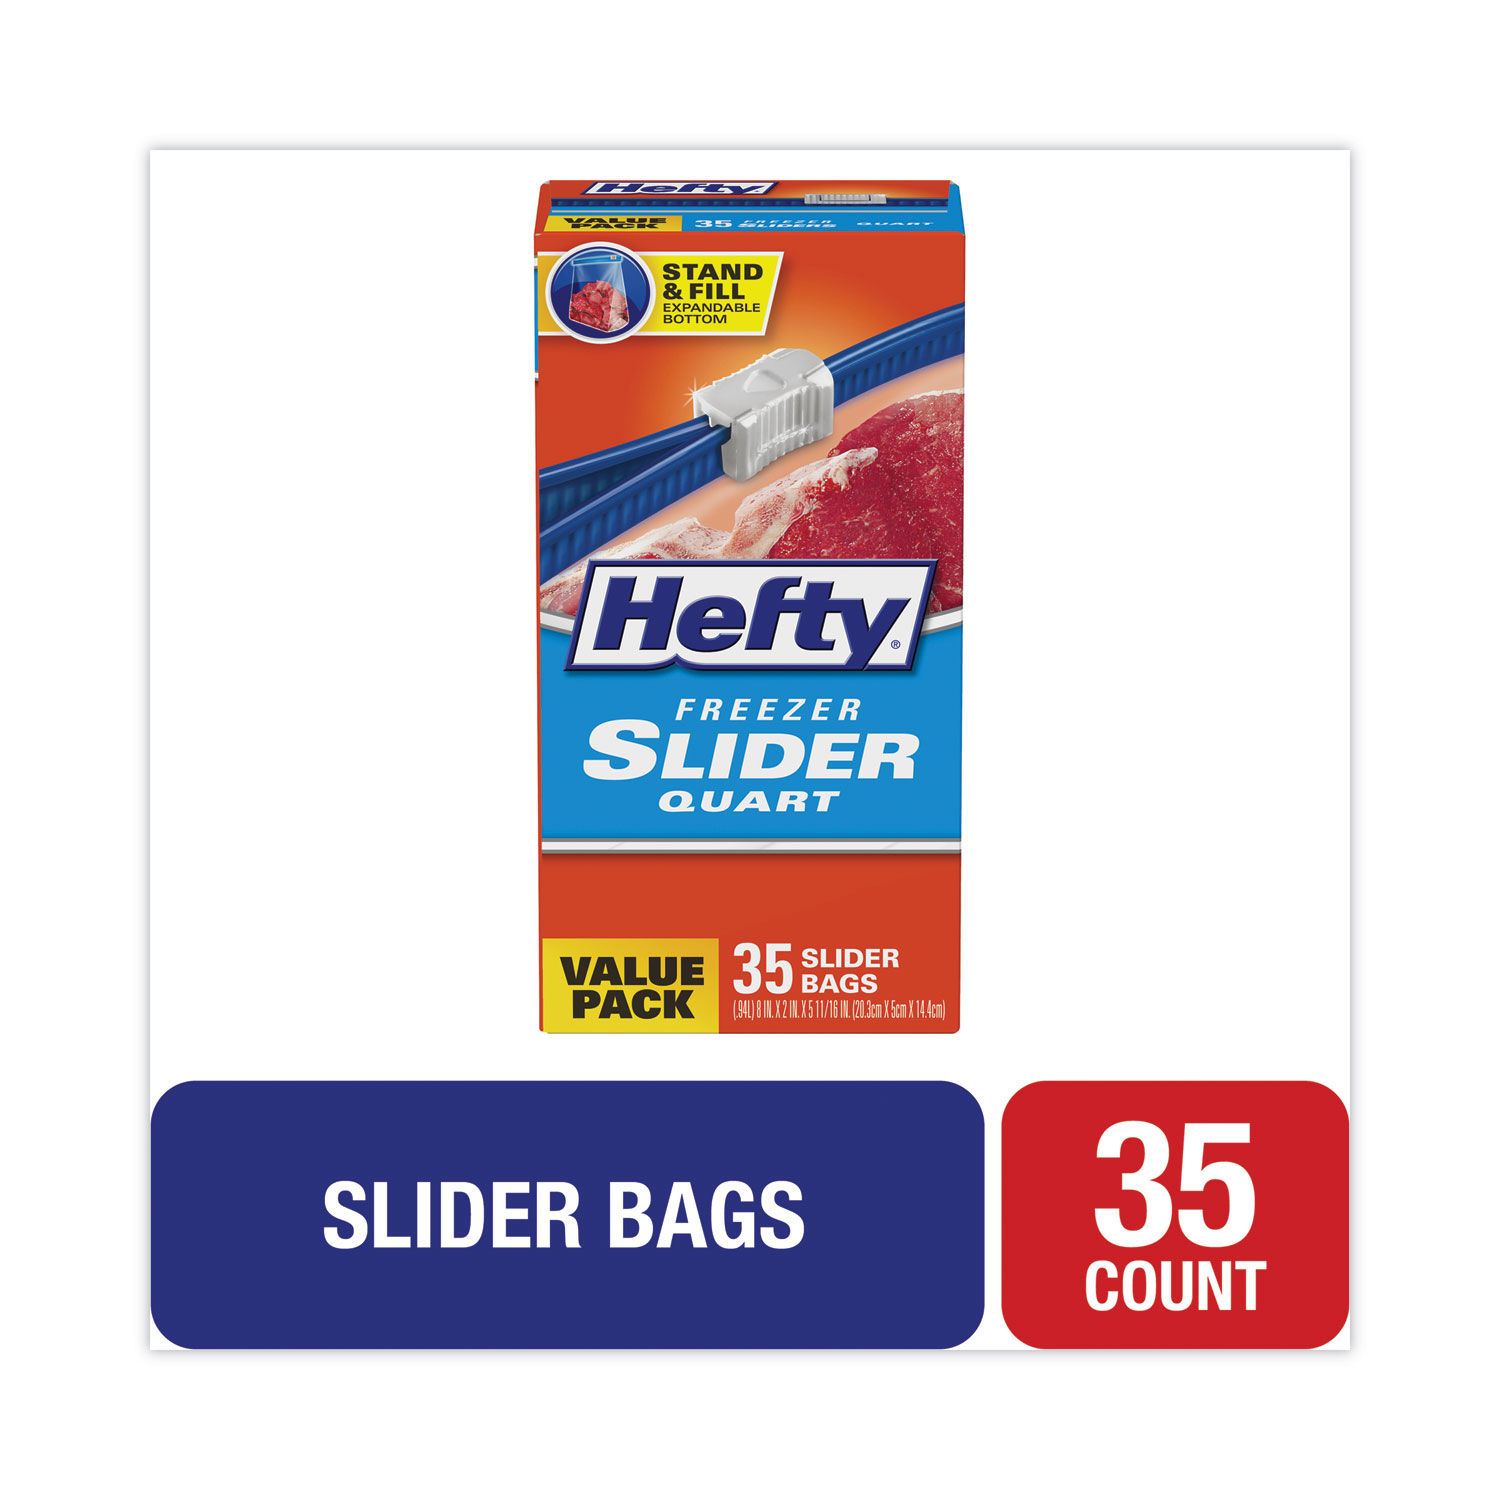 Hefty Slider Bags, Storage, 1 qt, 7 x 8, 0.7 mil, Clear, 20/Box, 9 Box/Carton